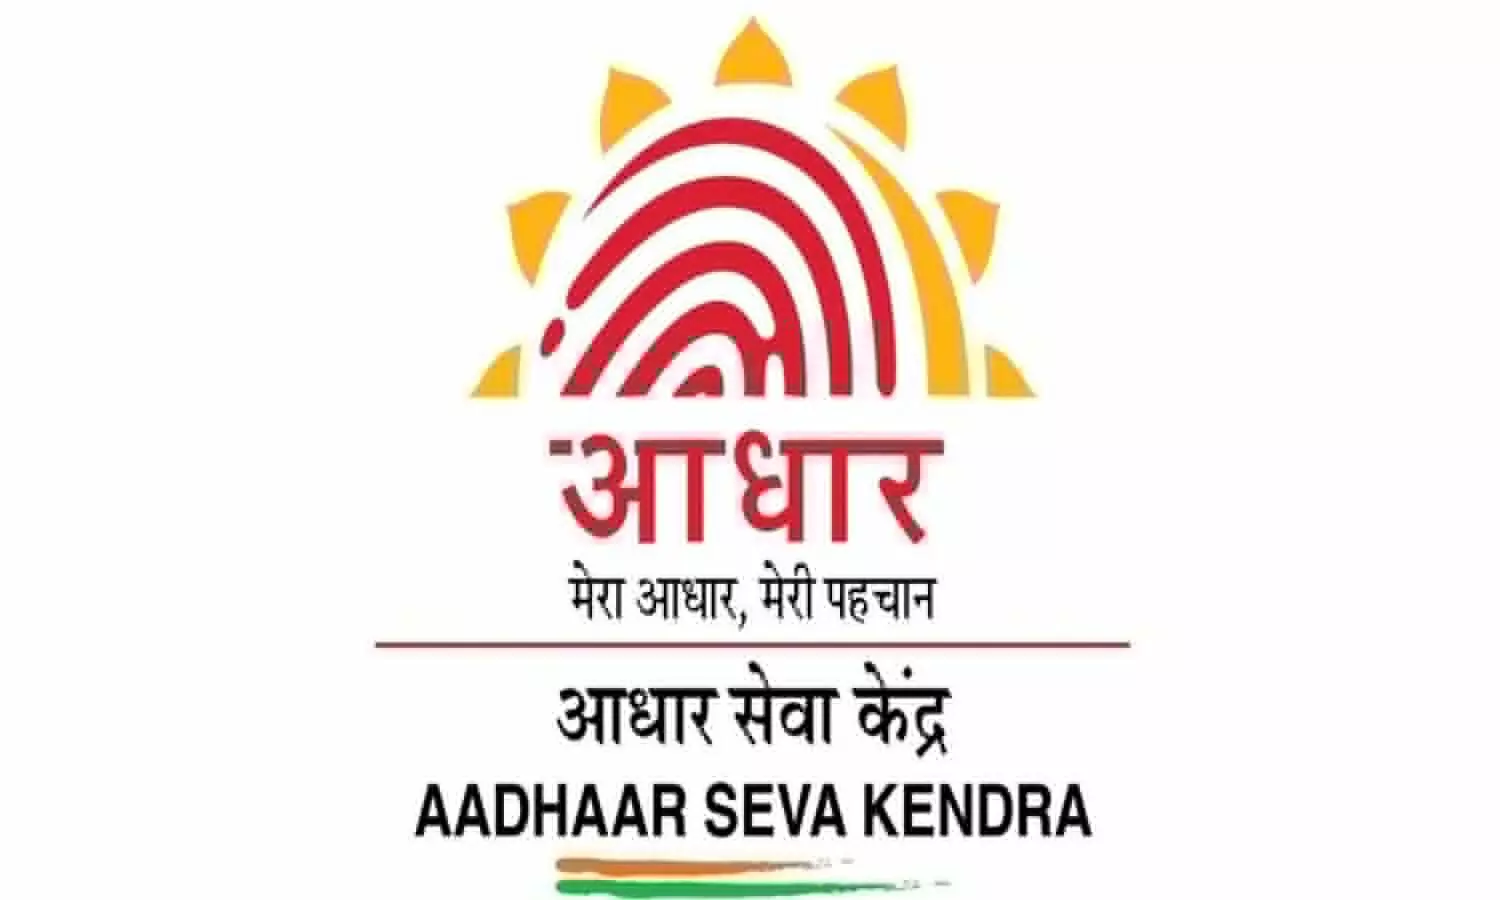 Aadhaar Enrolment Slip: लाभार्थी के लिए बड़ी खबर, सरकारी योजनाओं के लिए जरूरी एनरोल्मेंट स्लिप